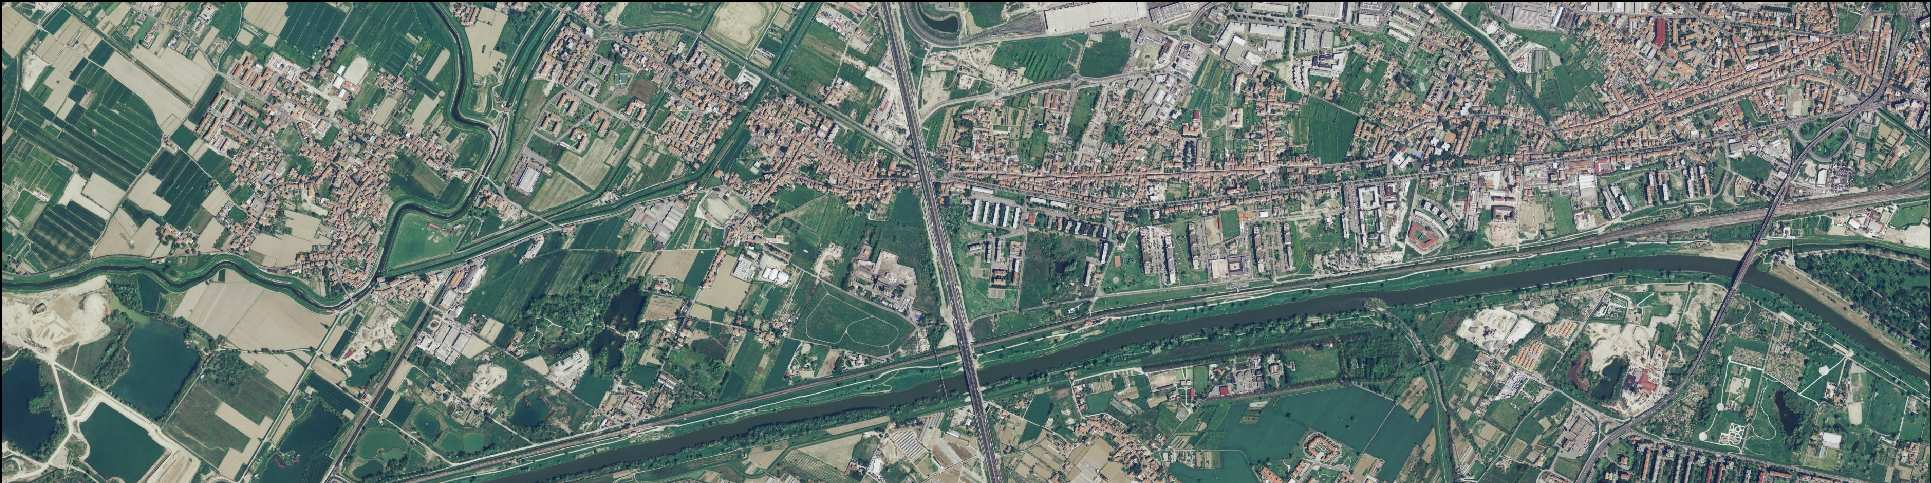 DESCRIZIONE: Si tratta di un aggregato produttivo che si sviluppa tra il torrente Vingone e via Pisana, costituito da una pluralità di insediamenti